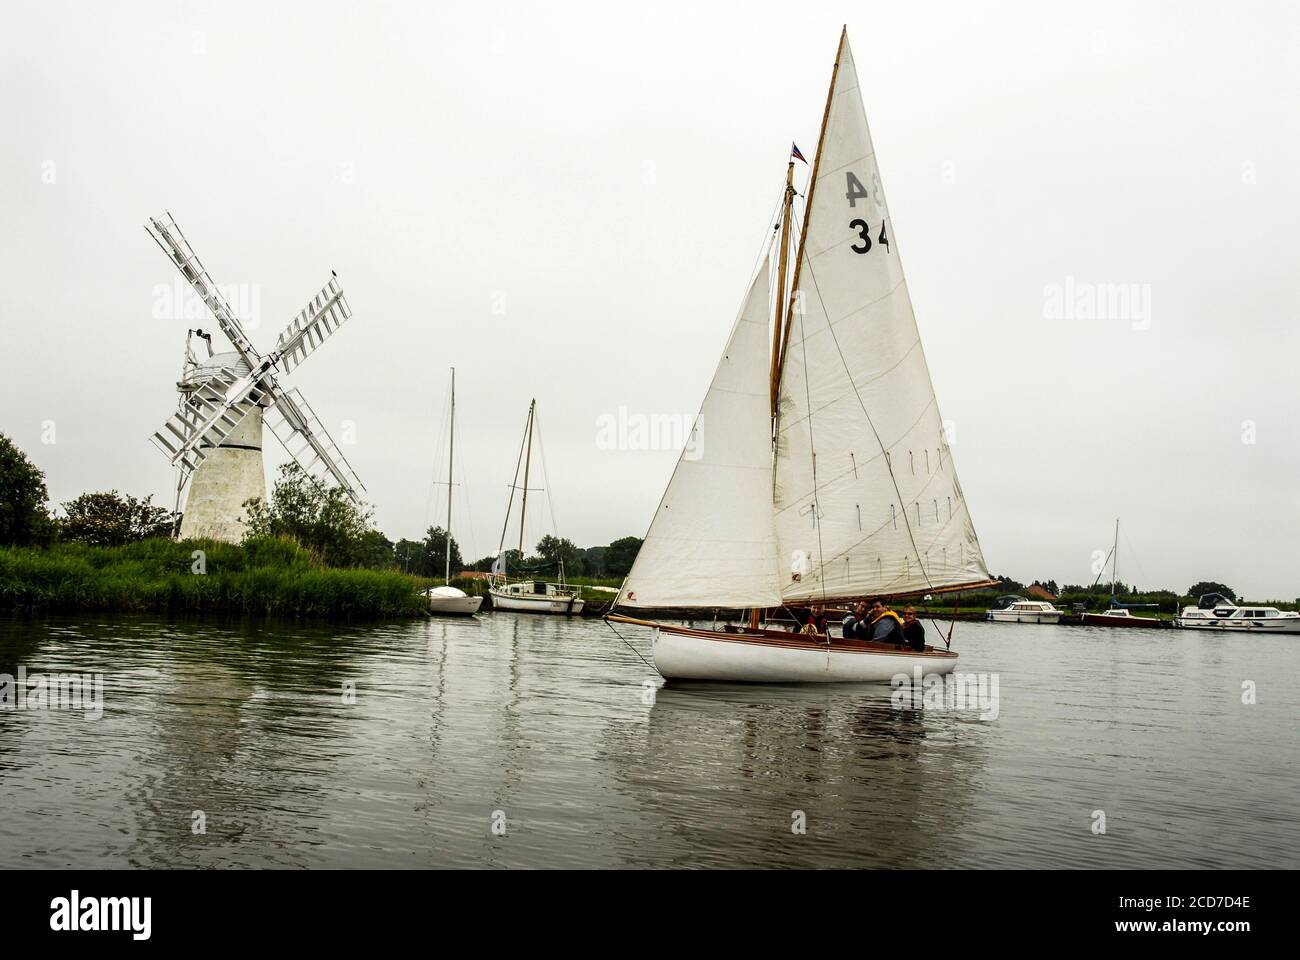 Algunos centros de alquiler de barcos ofrecen barcos de vela de madera tradicionales respetuosos con el medio ambiente en los Norfolk Broads en Gran Bretaña. un sai de madera construido en 1930 Foto de stock